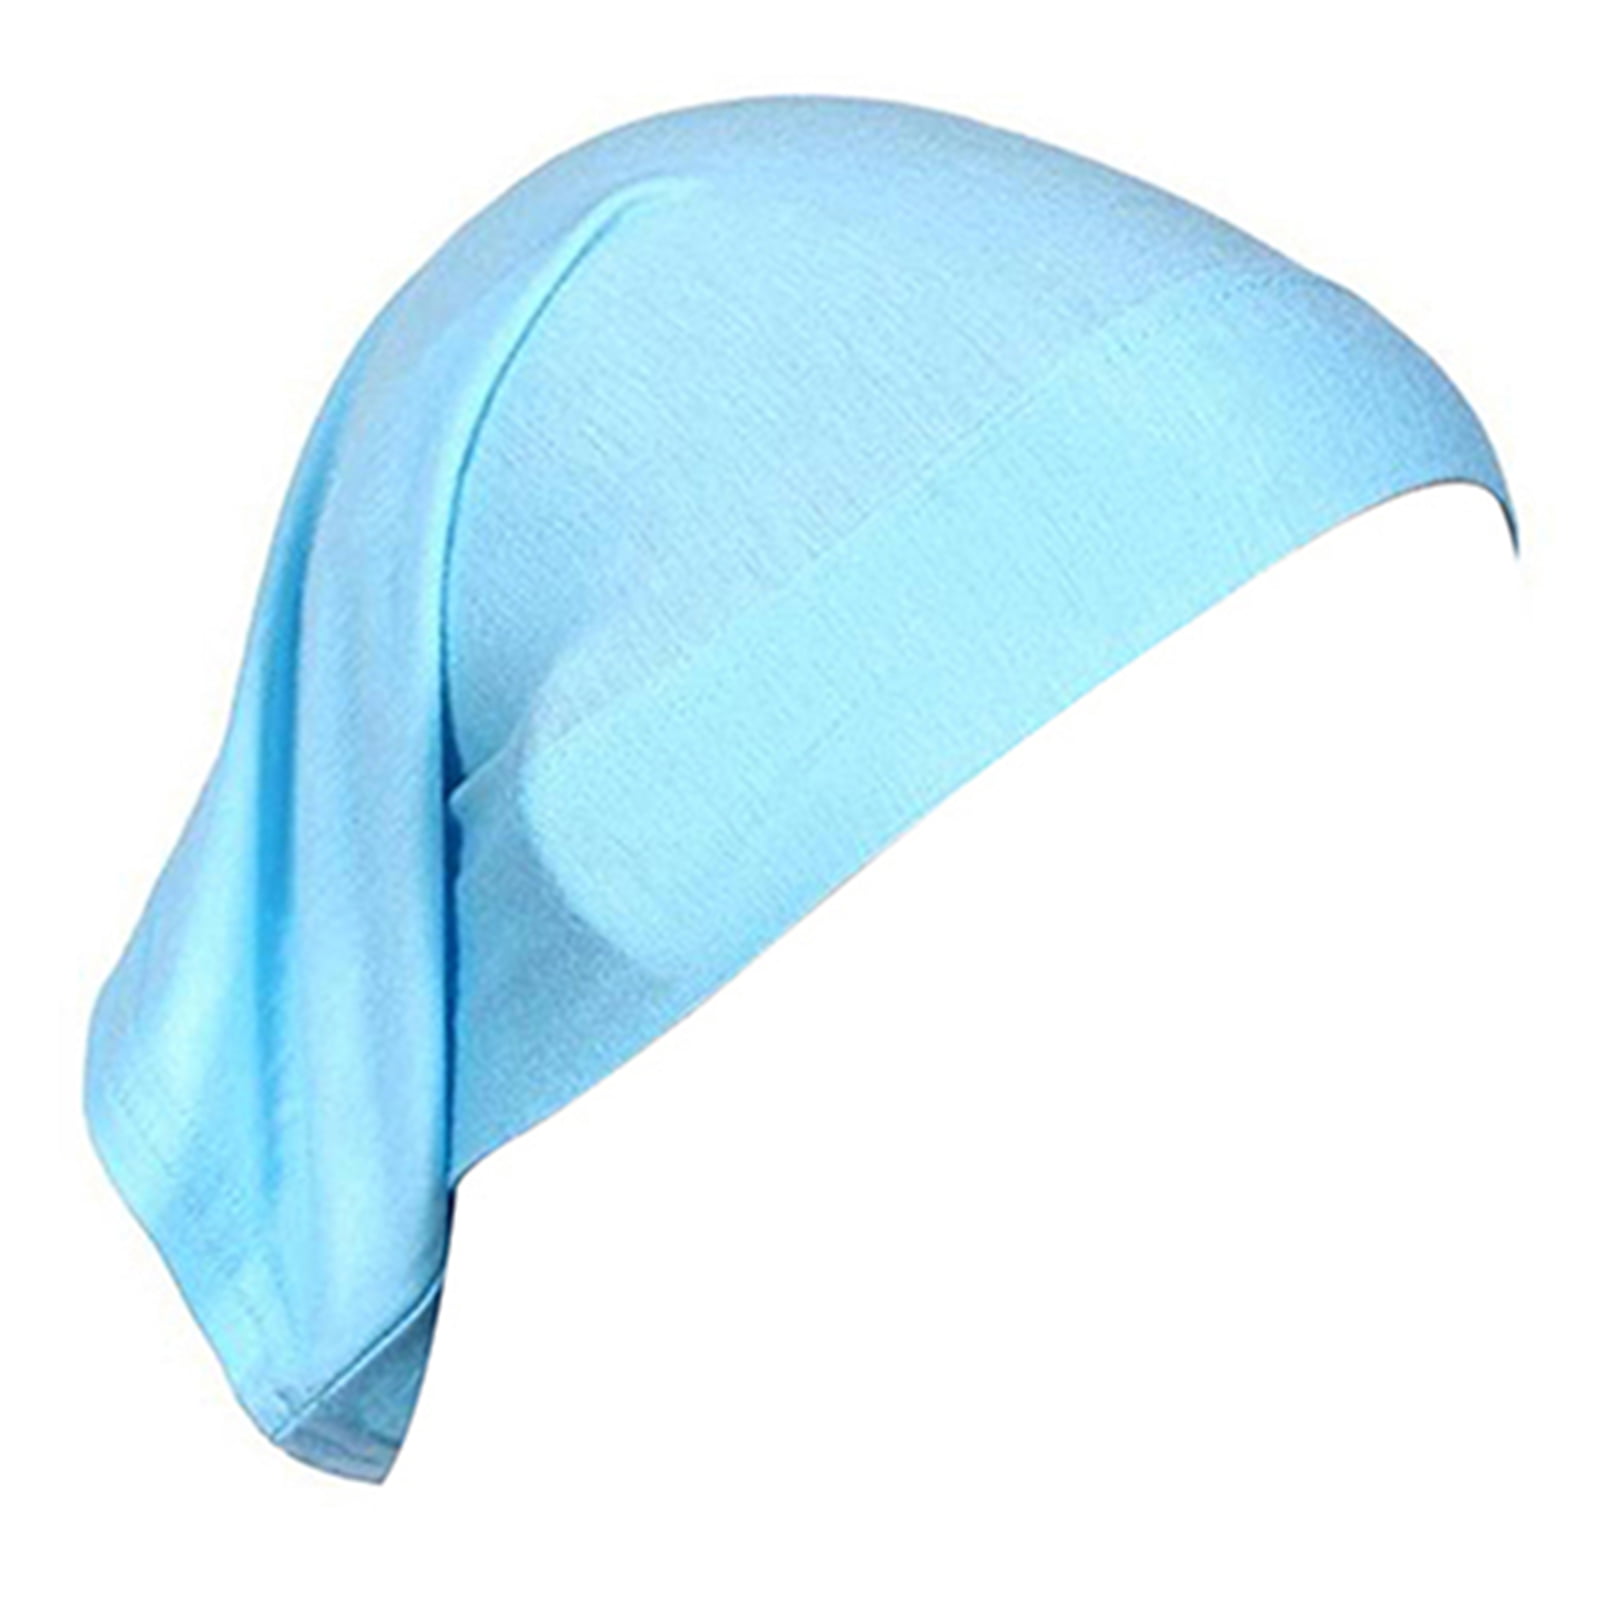 y120001 cabeça wraps designer durag turbante cap headwraps mulheres  bandanas para mujer logotipo personalizado algodão lenço lenço